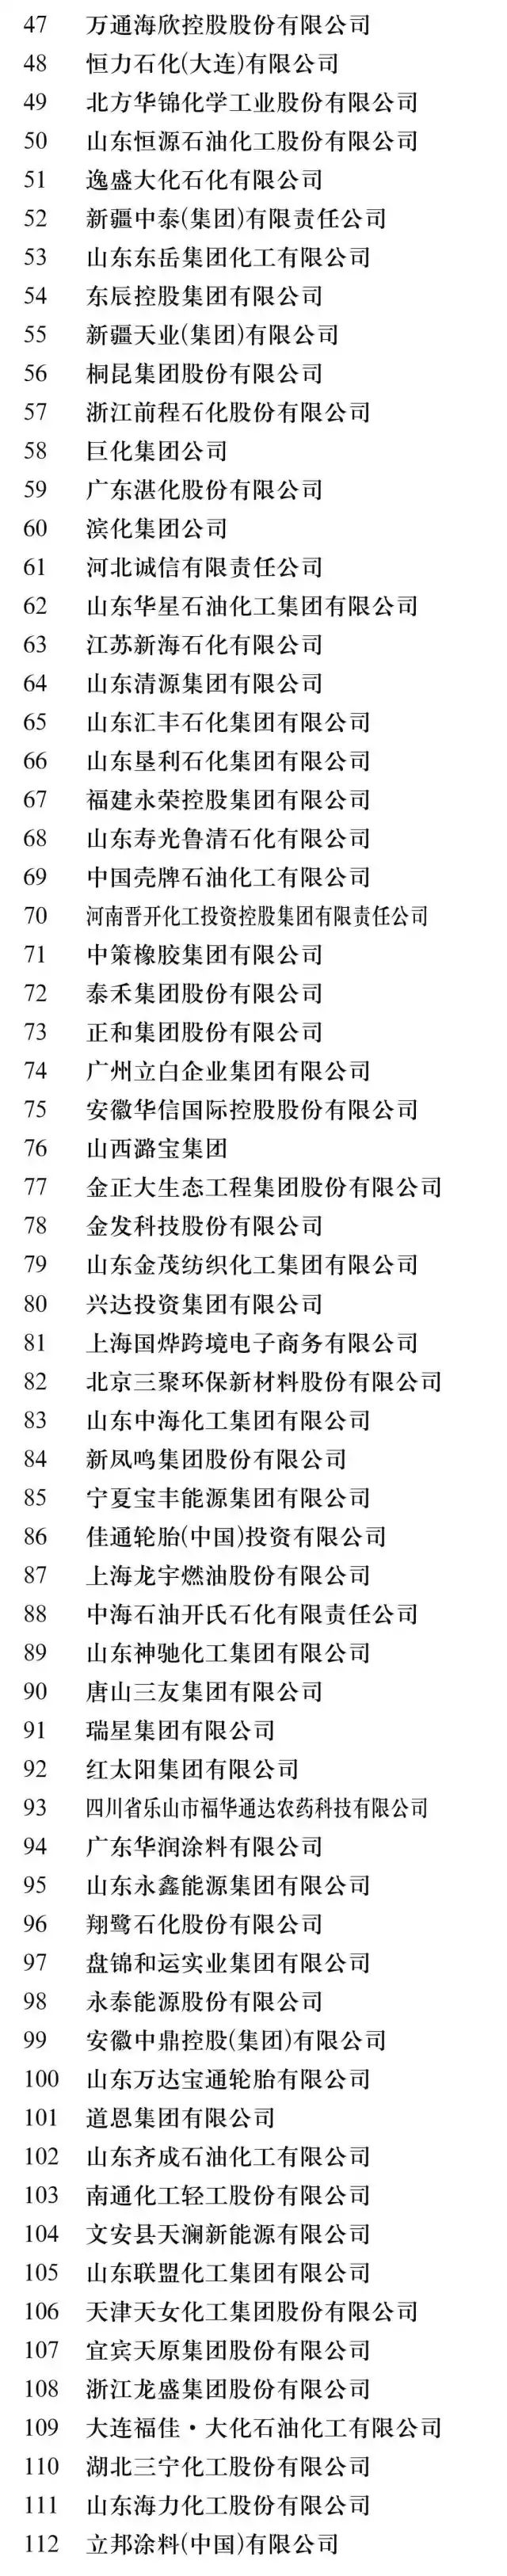 2017中国石电竞菠菜外围app油和化工企业500强榜单出炉。看看名单上有哪些公司（附详细名单）